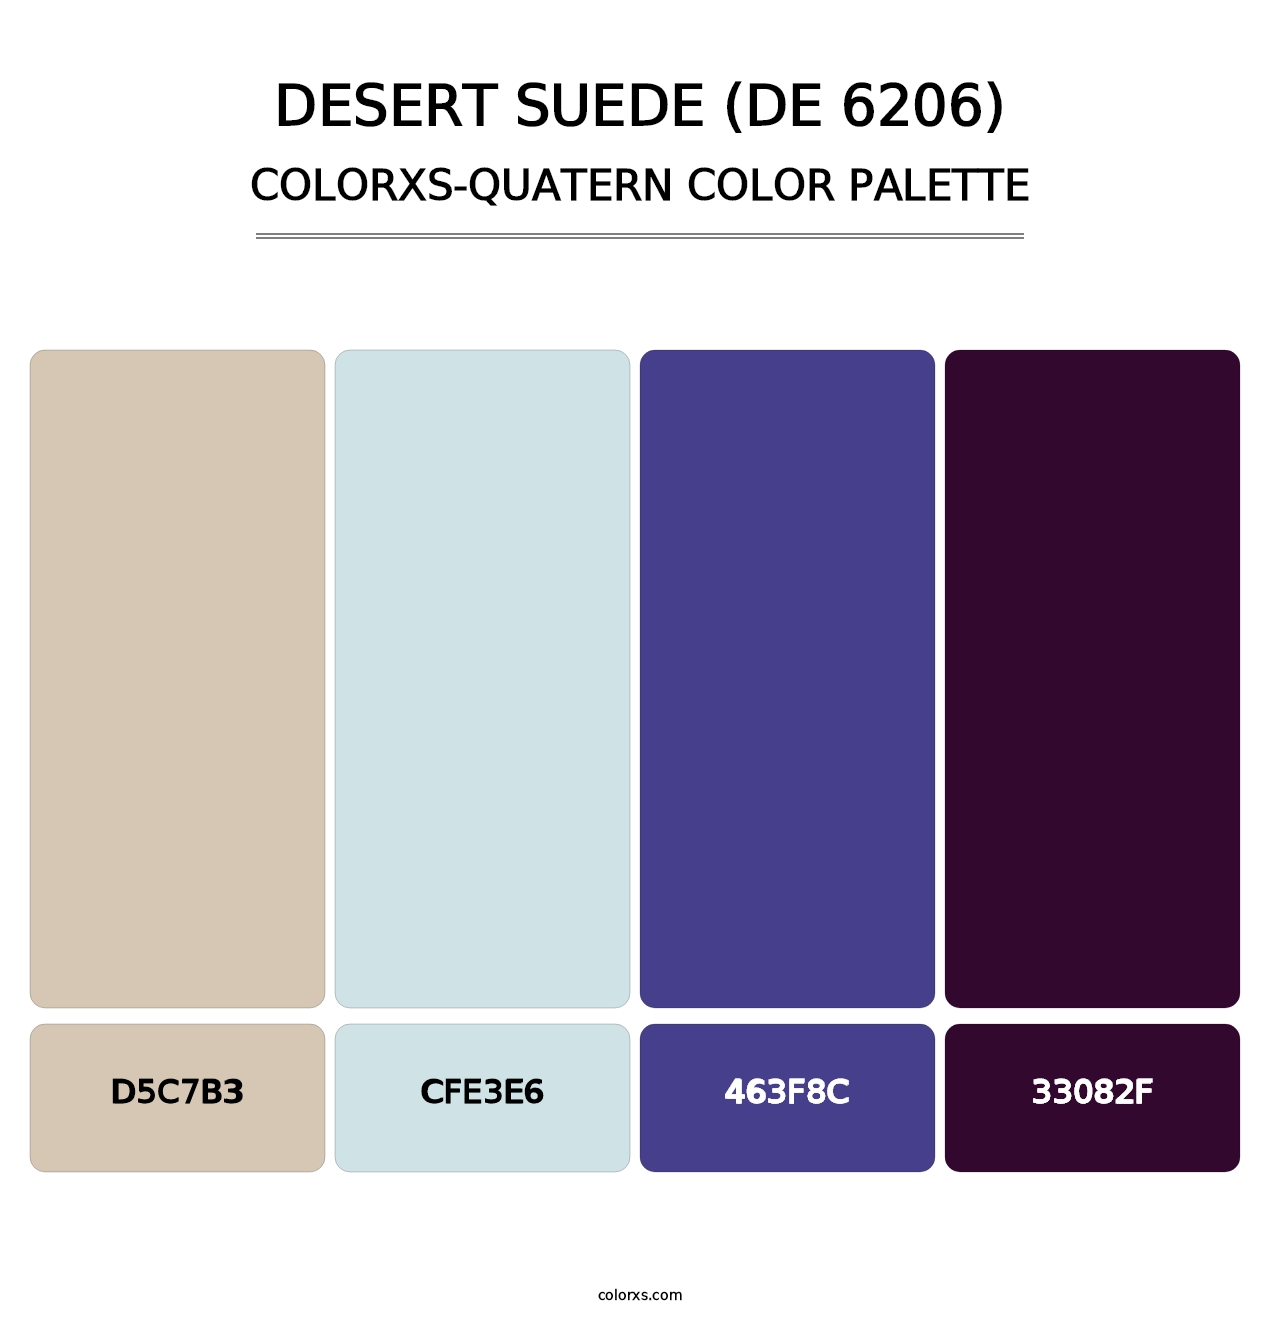 Desert Suede (DE 6206) - Colorxs Quatern Palette